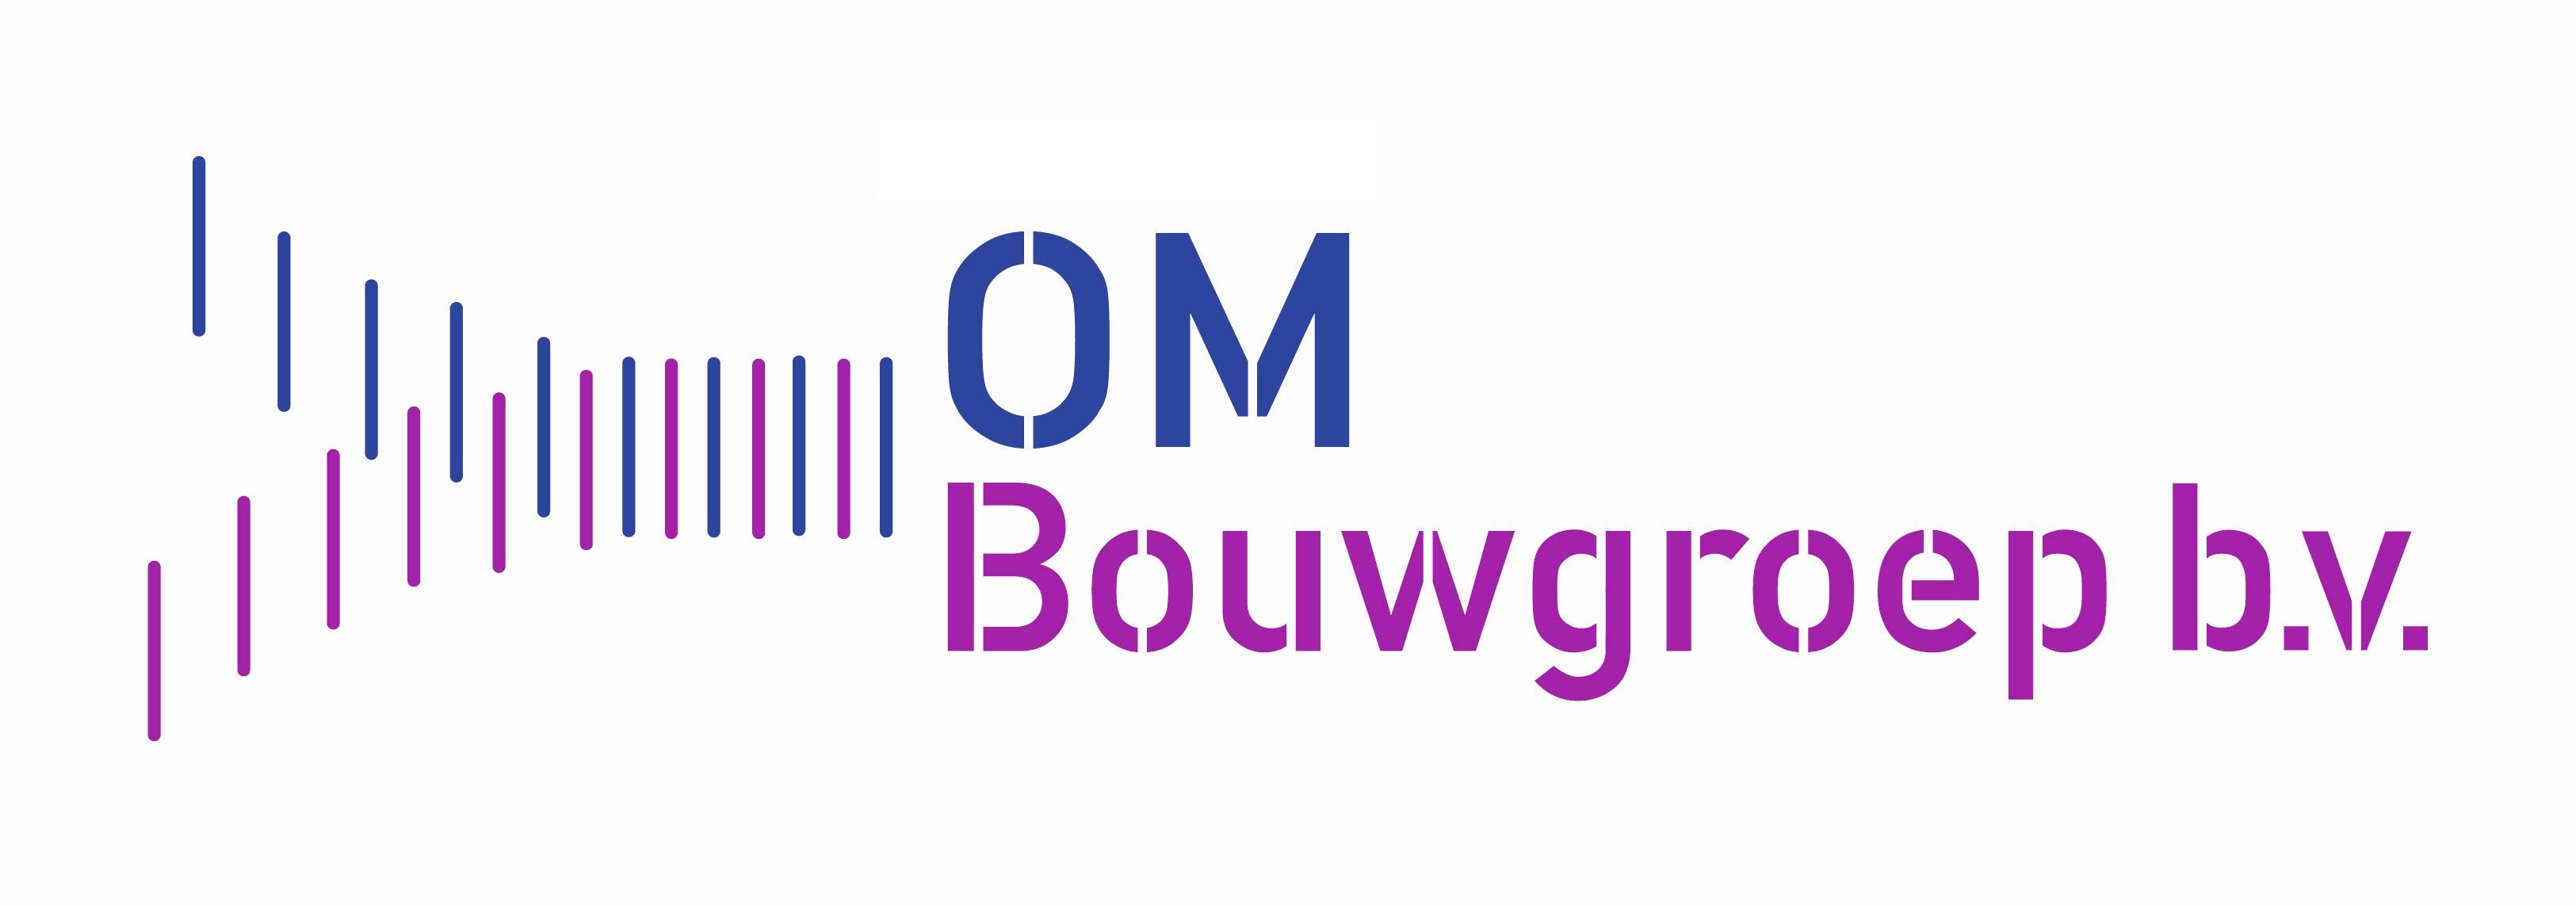 OM Bouwgroep B.V.